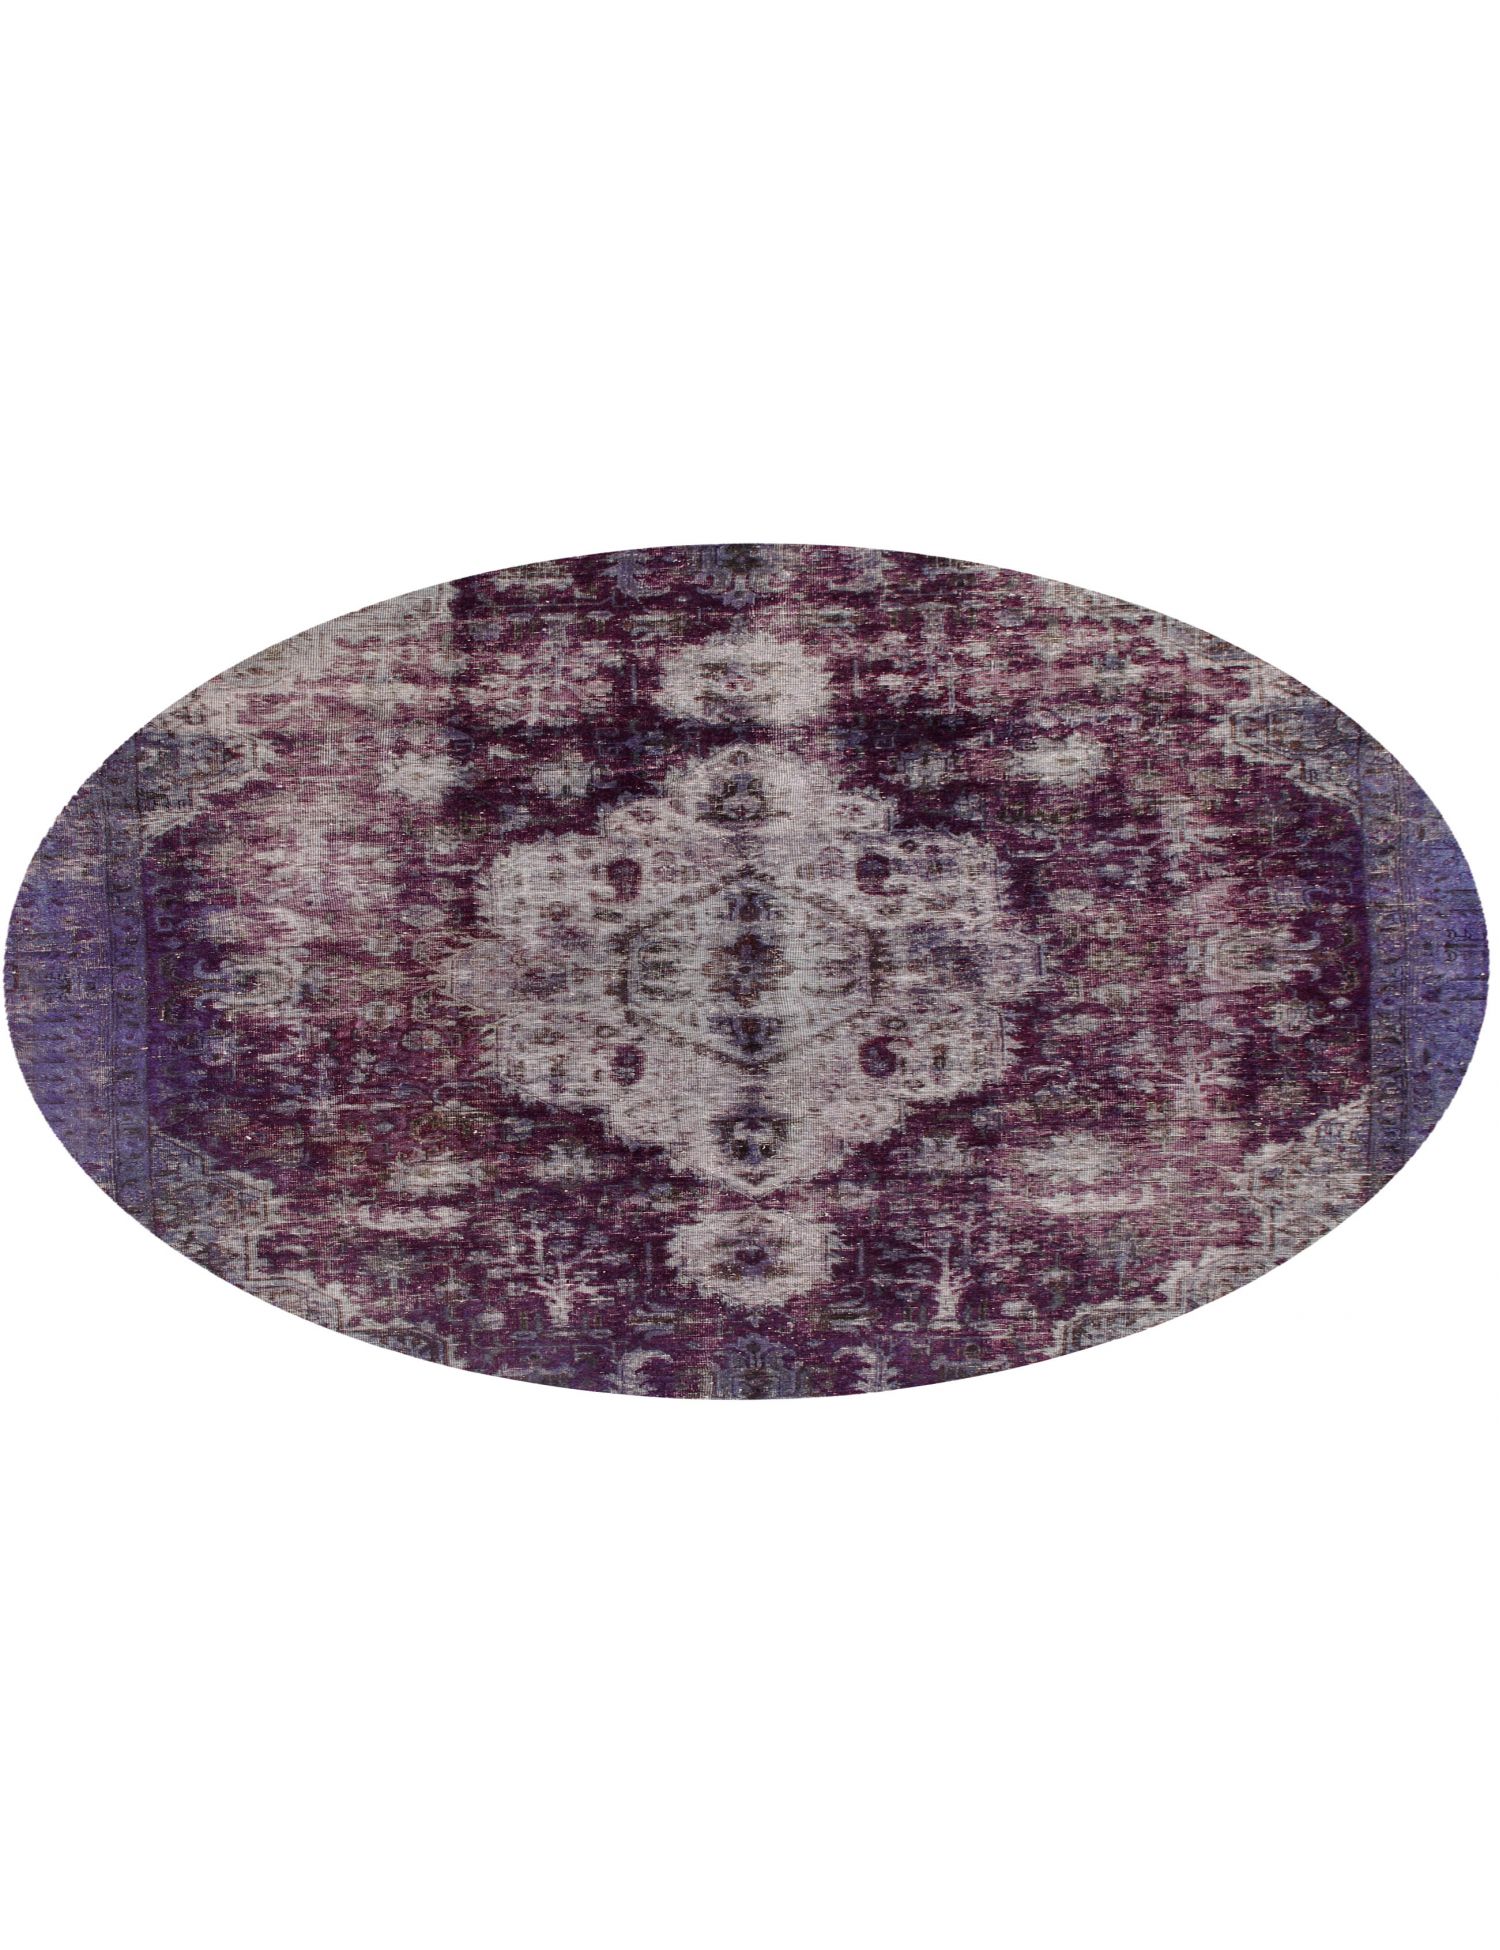 Rund  Vintage Teppich  lila <br/>243 x 243 cm